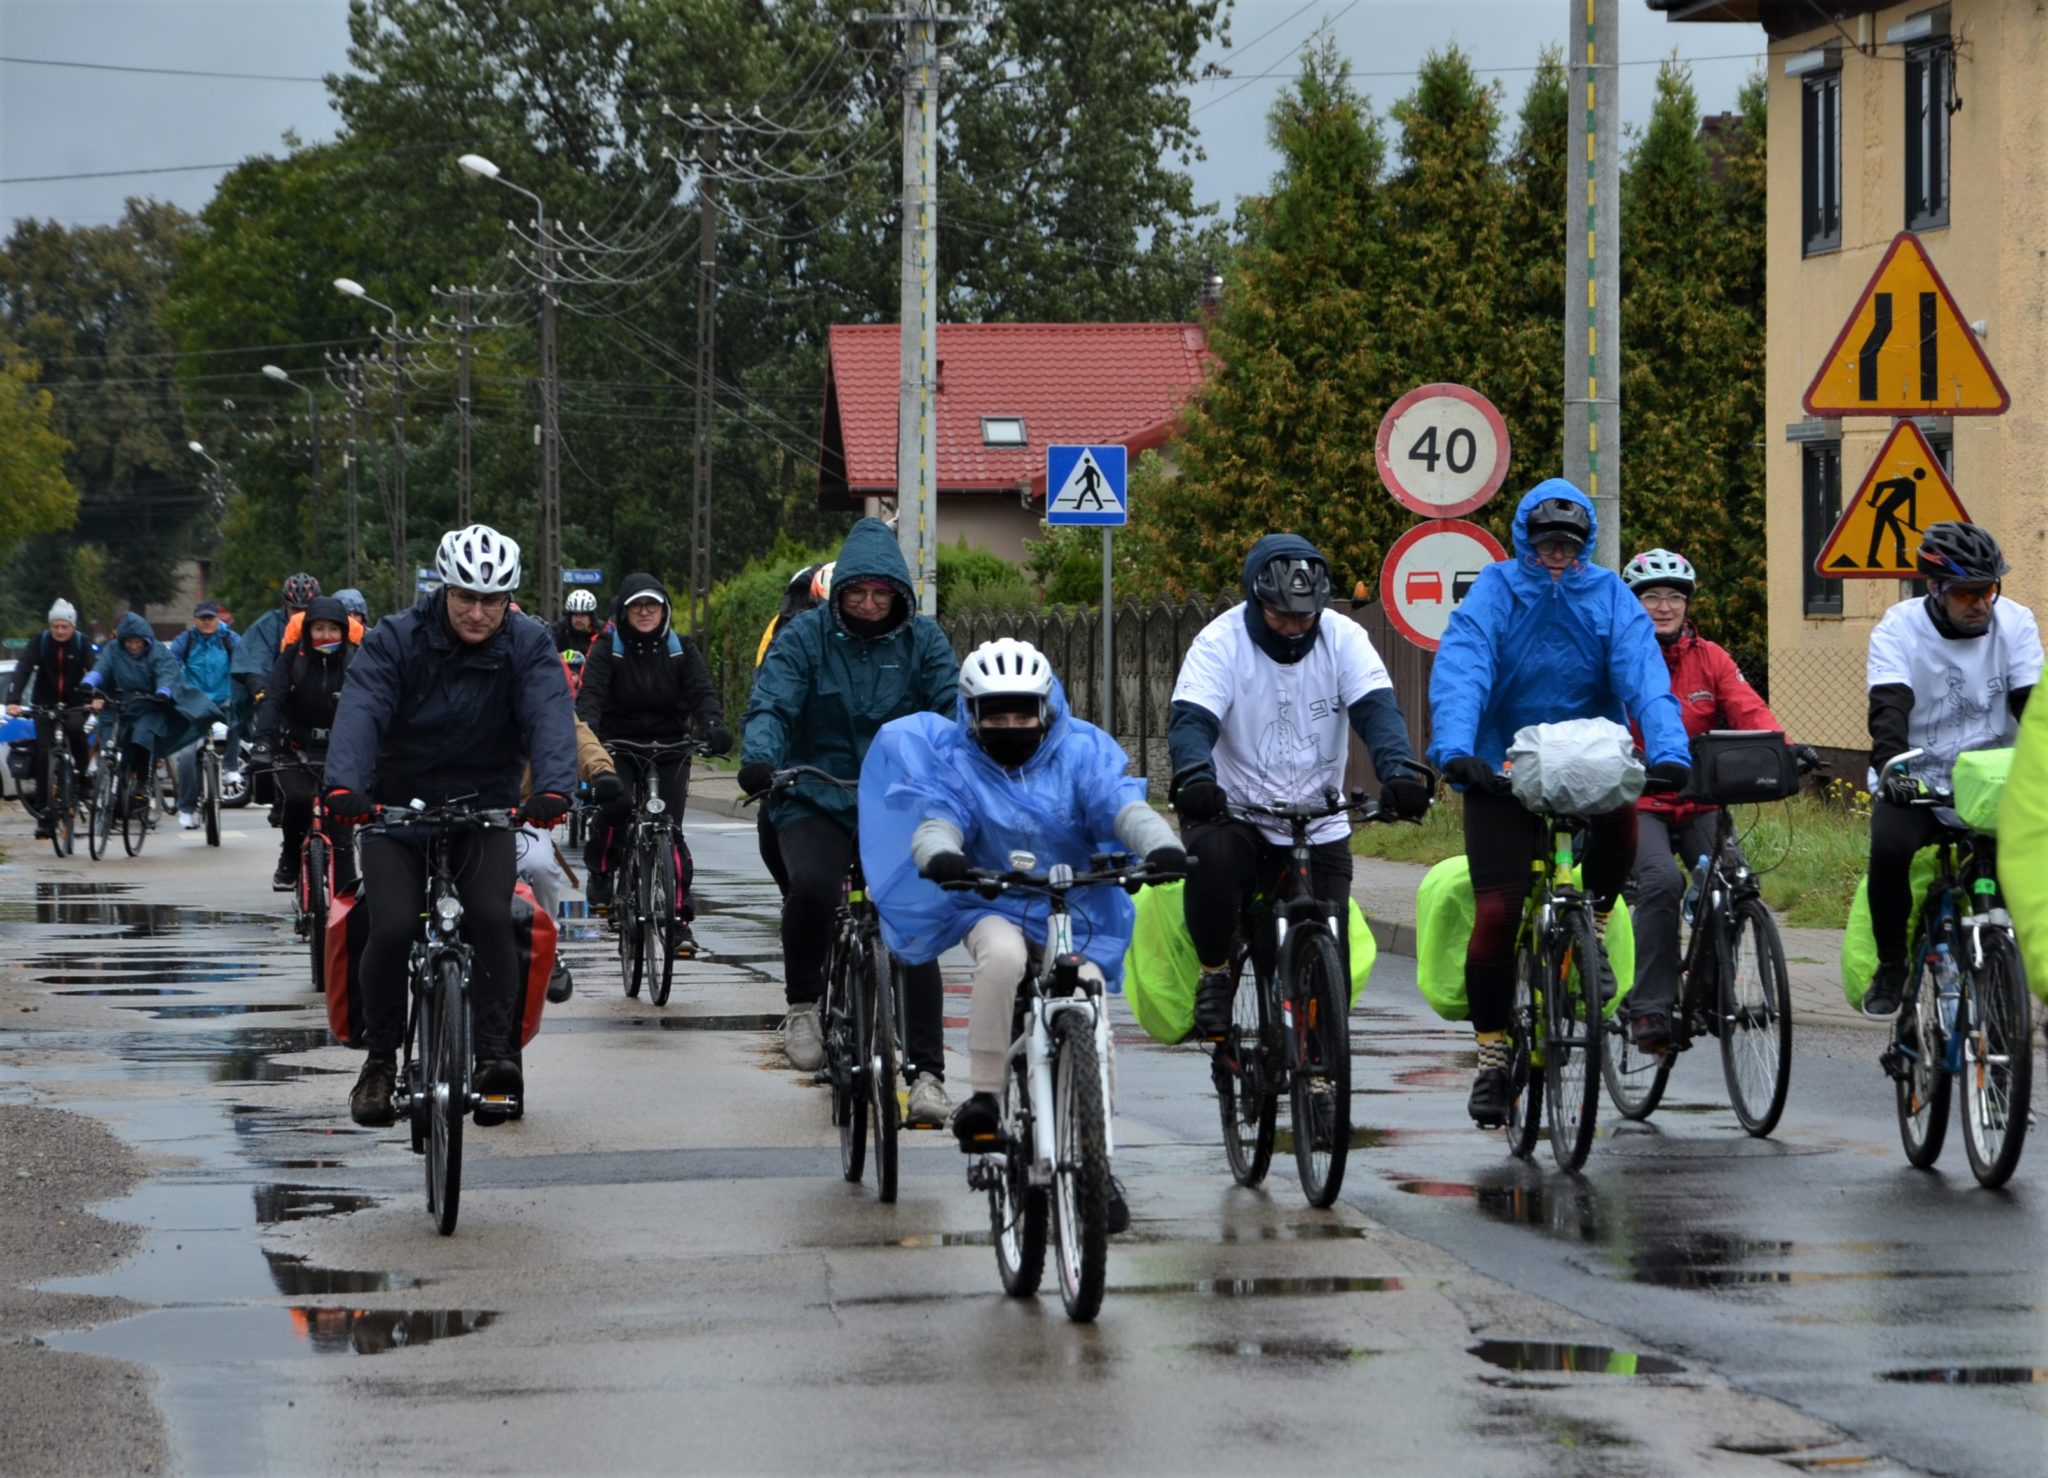 Kilkanaście osób jadących na rowerach, część osób jest ubranych w płaszcze przeciwdeszczowe.